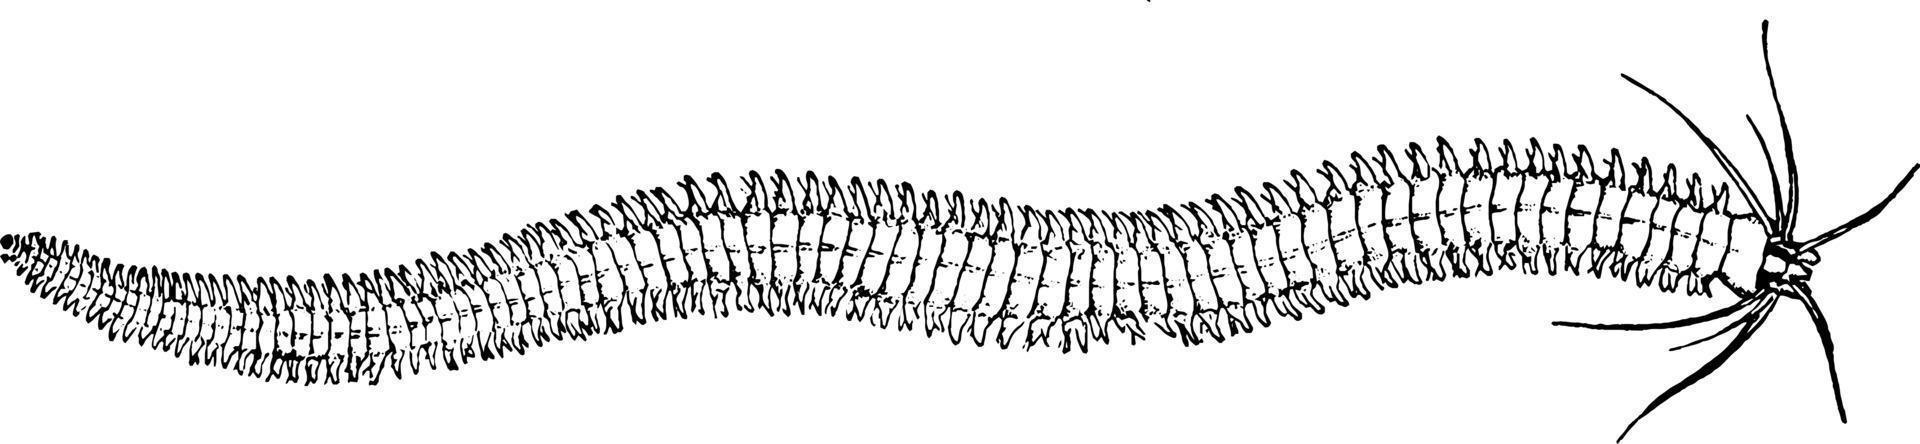 gusano marino, ilustración vintage. vector